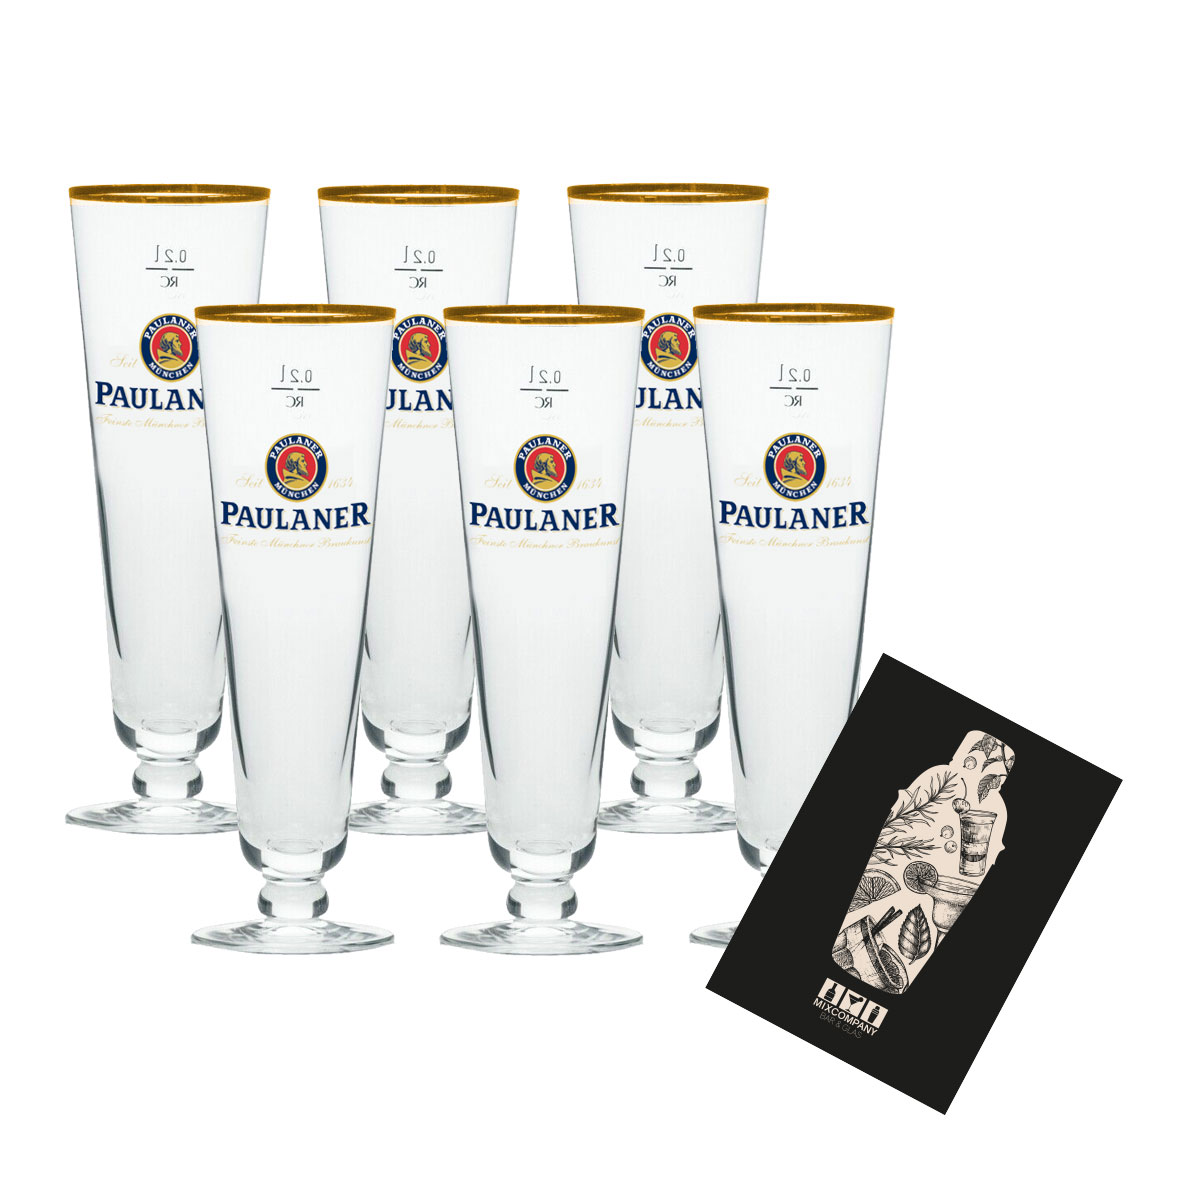 Paulaner München Premium Pils 6er Set Bierglas Glas 6x Gläser 0,2L Eichung und Goldrand